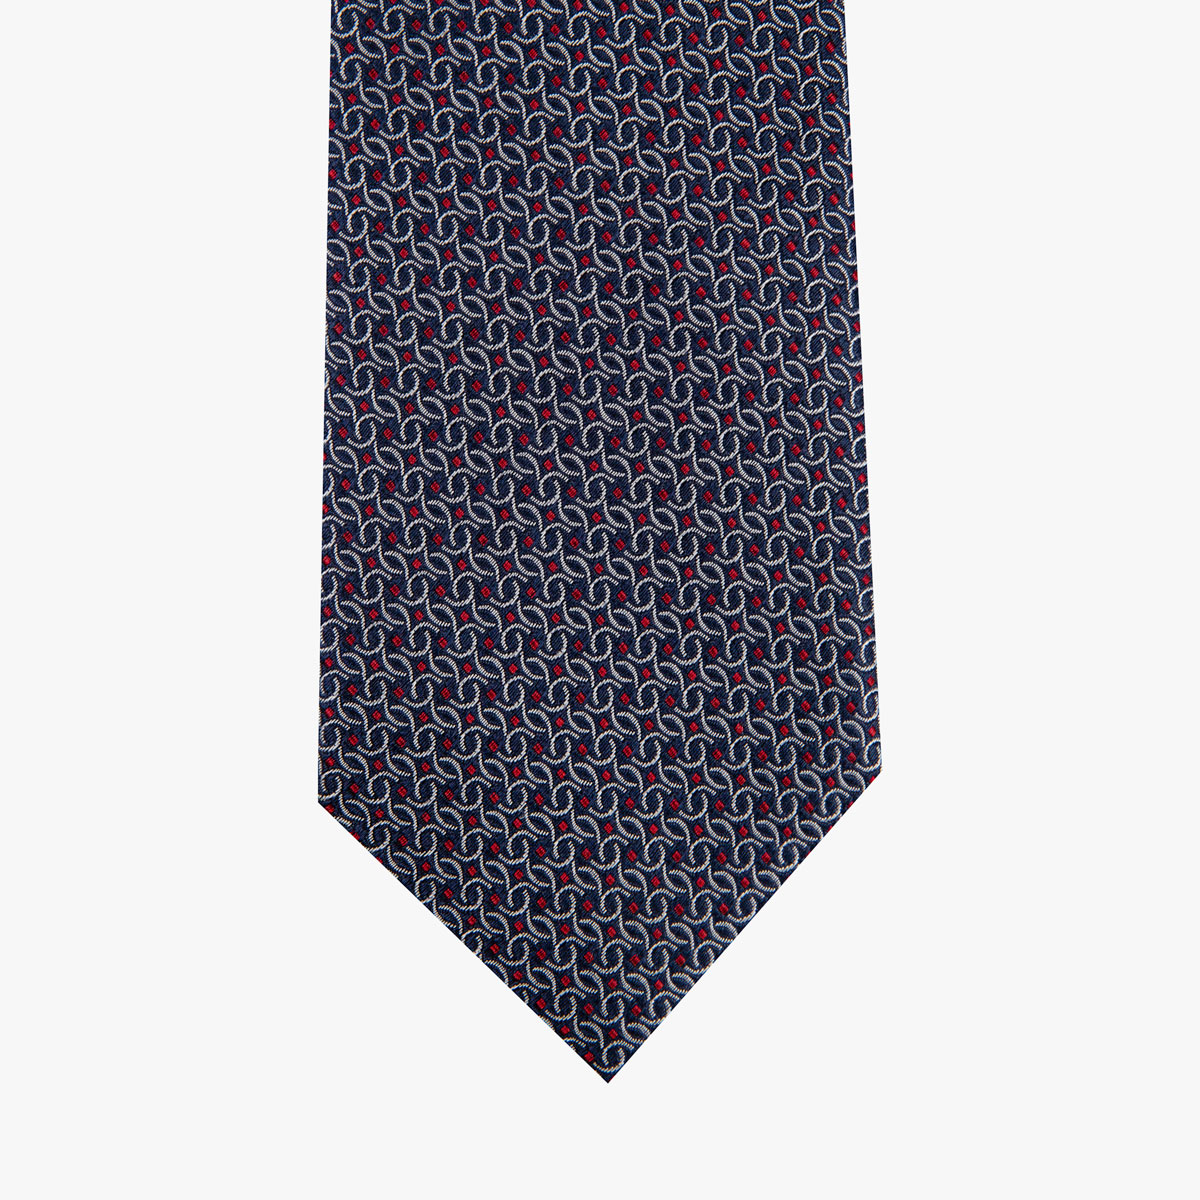 Krawatte glatt gemustert in dunkelblau rot